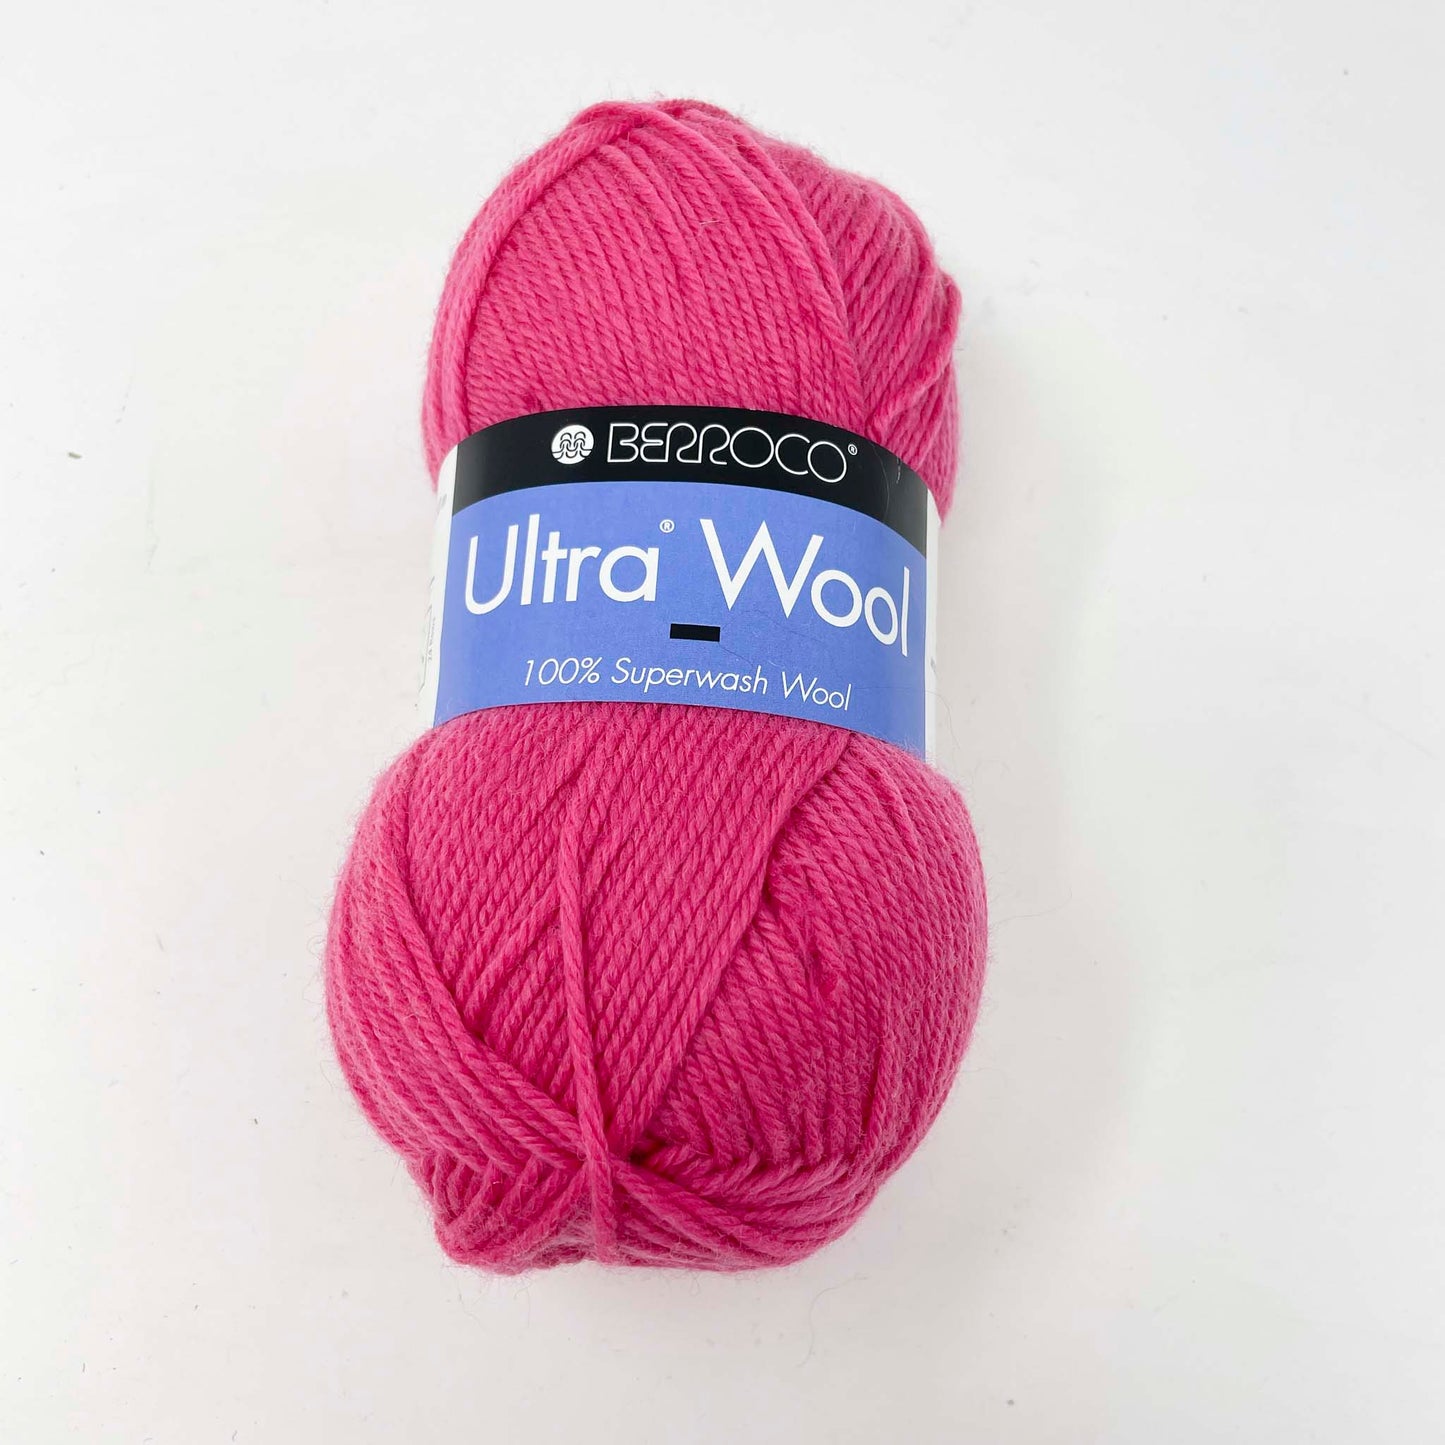 Berroco Ultra Wool Yarn - 3331 Hibiscus